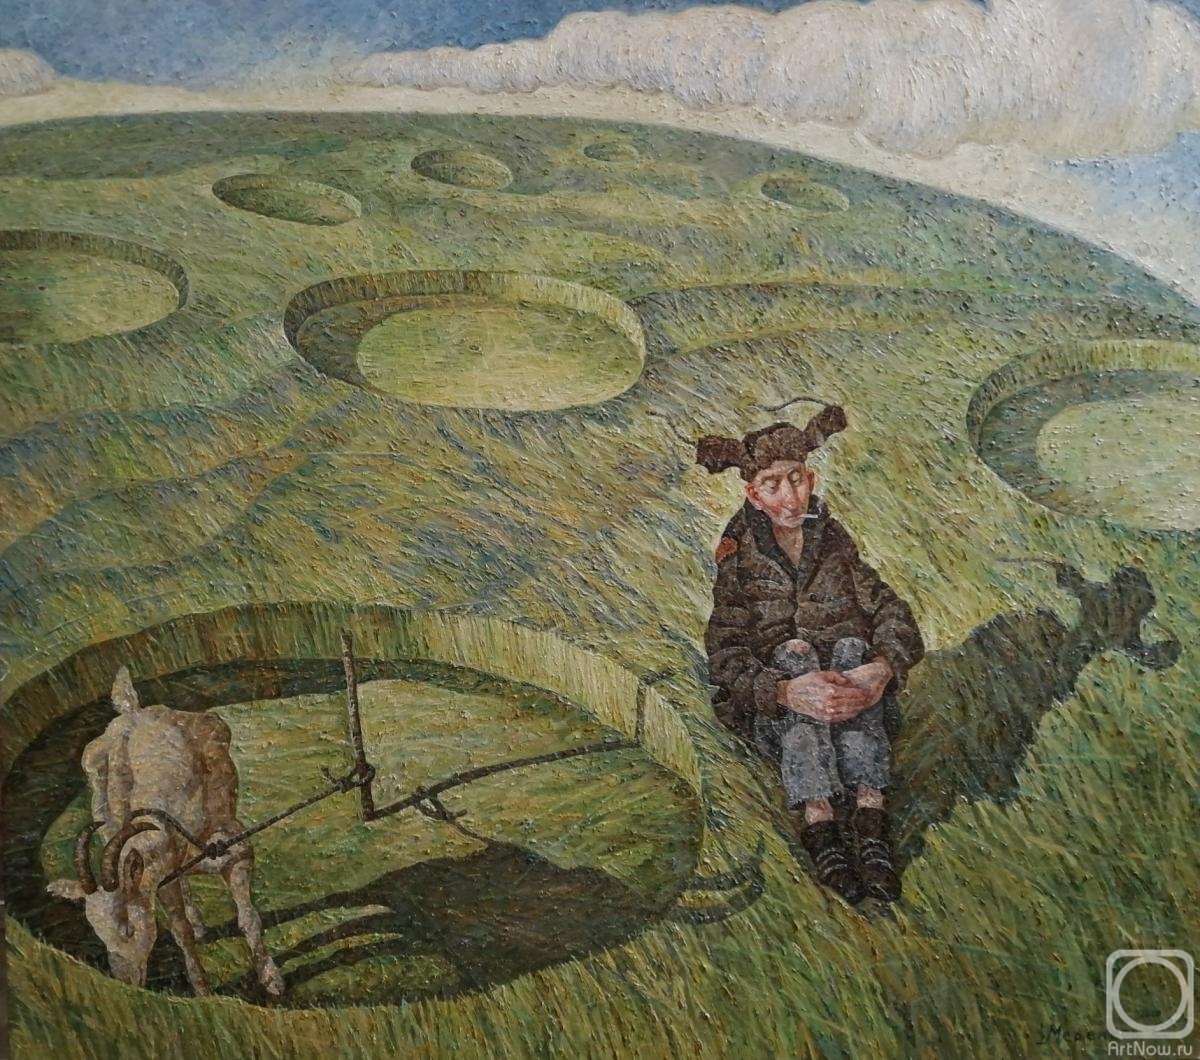 Merenkov Sergei. Crop circles